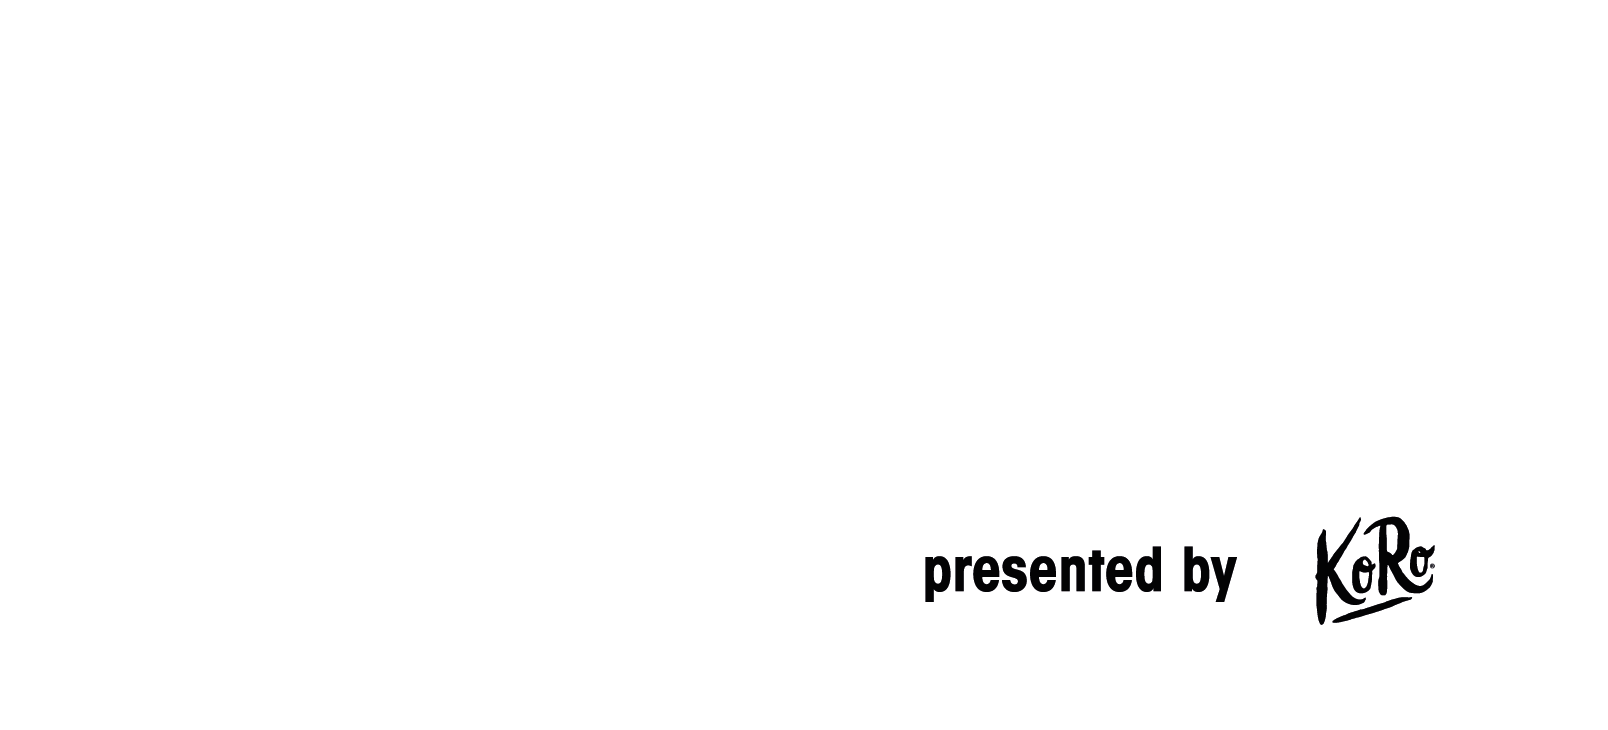 Gamescom LAN logo